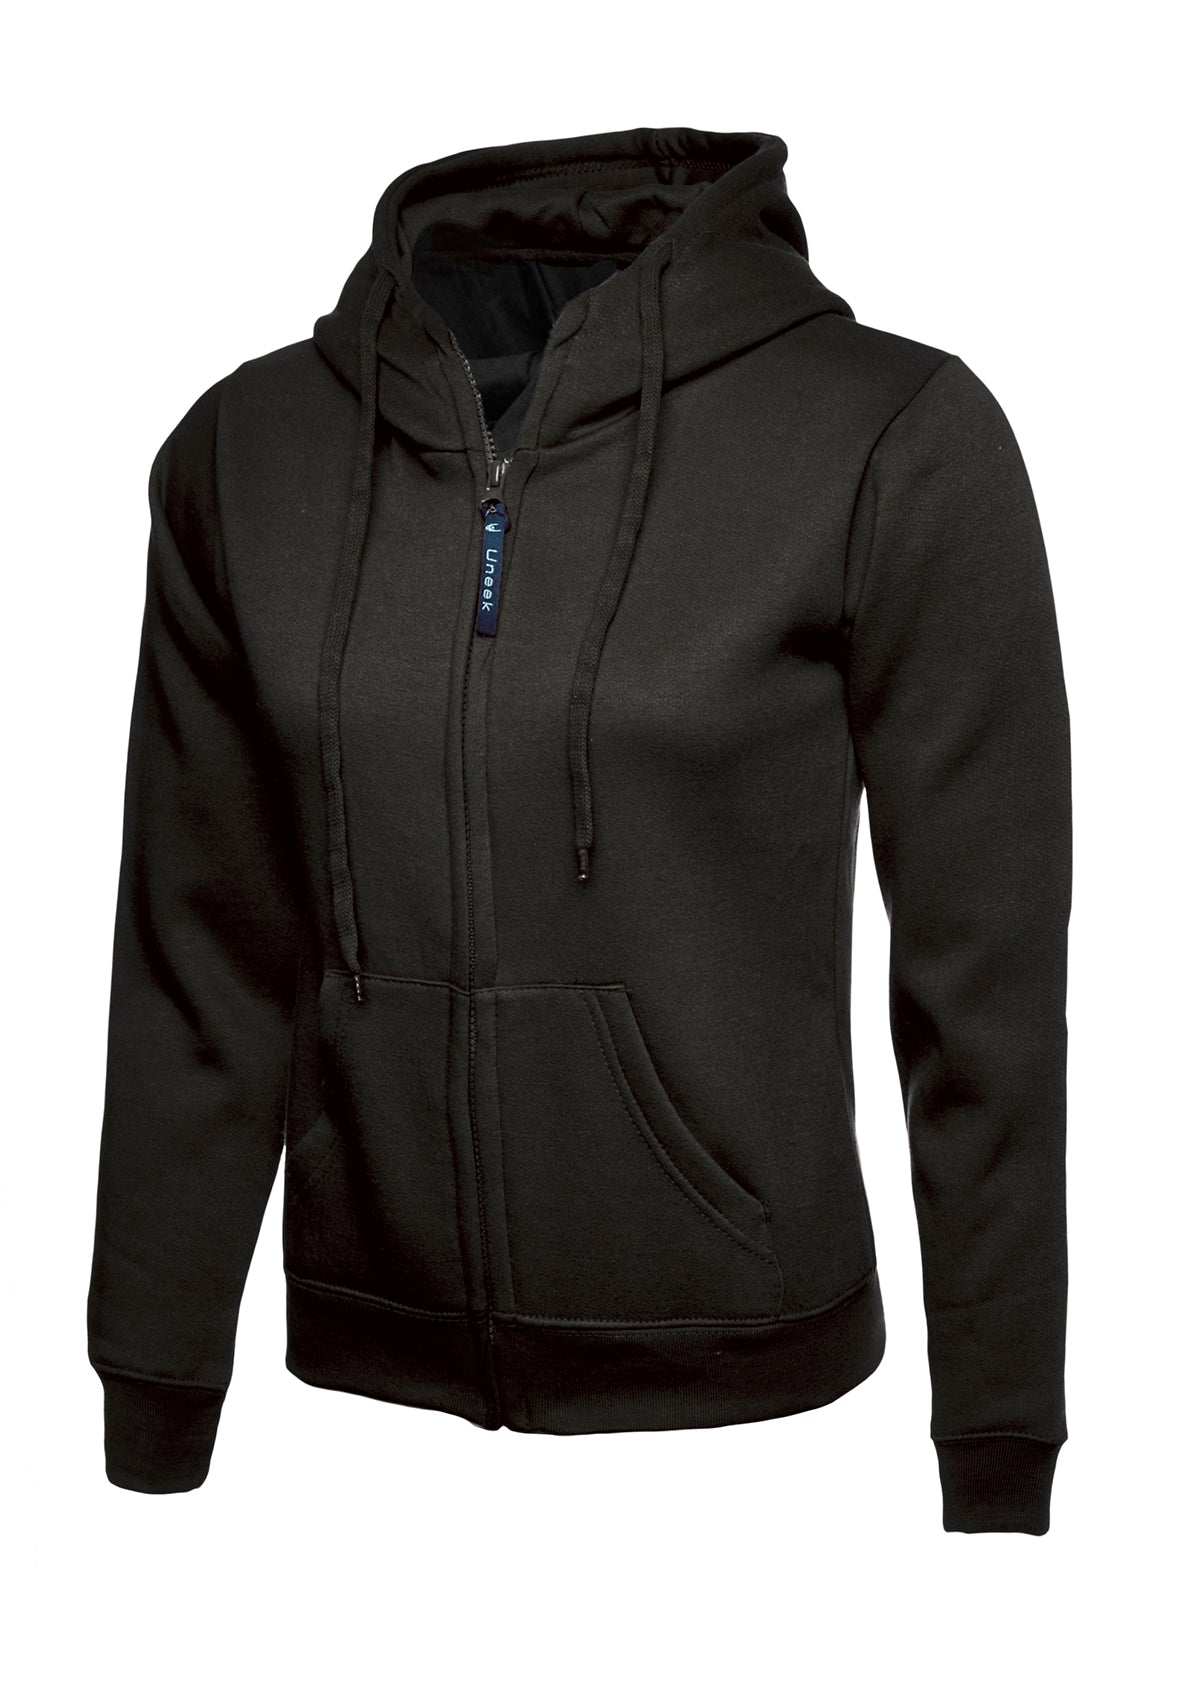 Uneek Ladies Classic Full Zip Hooded Sweatshirt UC505 - Black